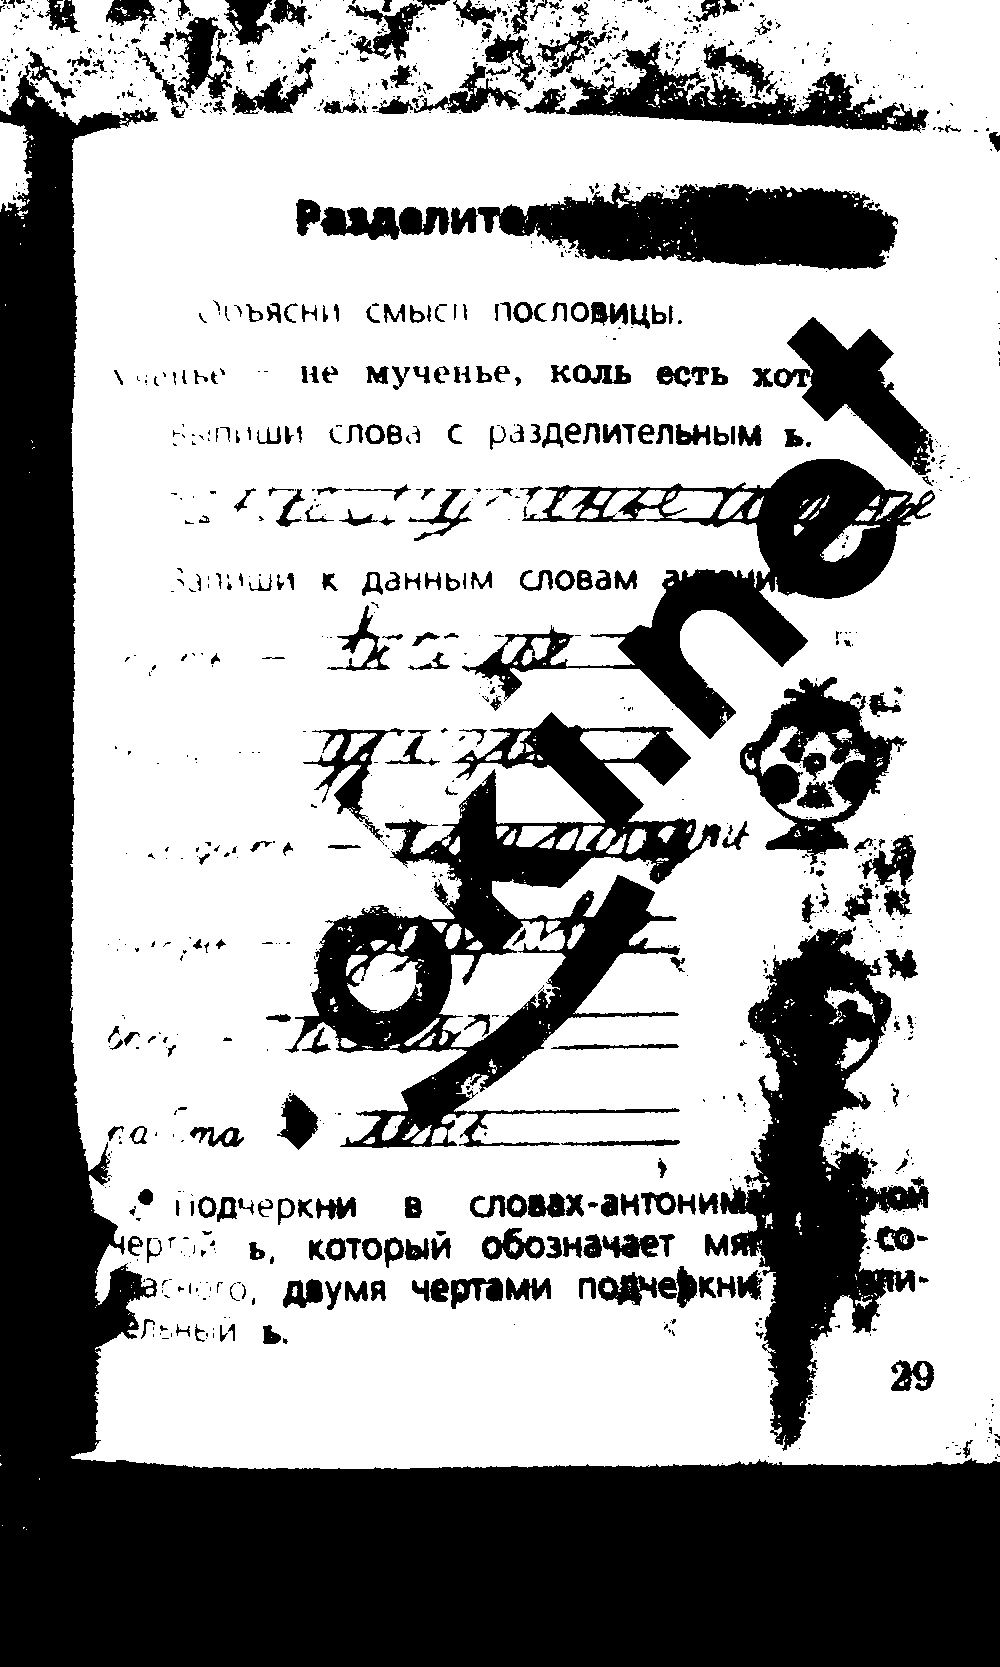 ГДЗ Русский язык 2 класс - стр. 29